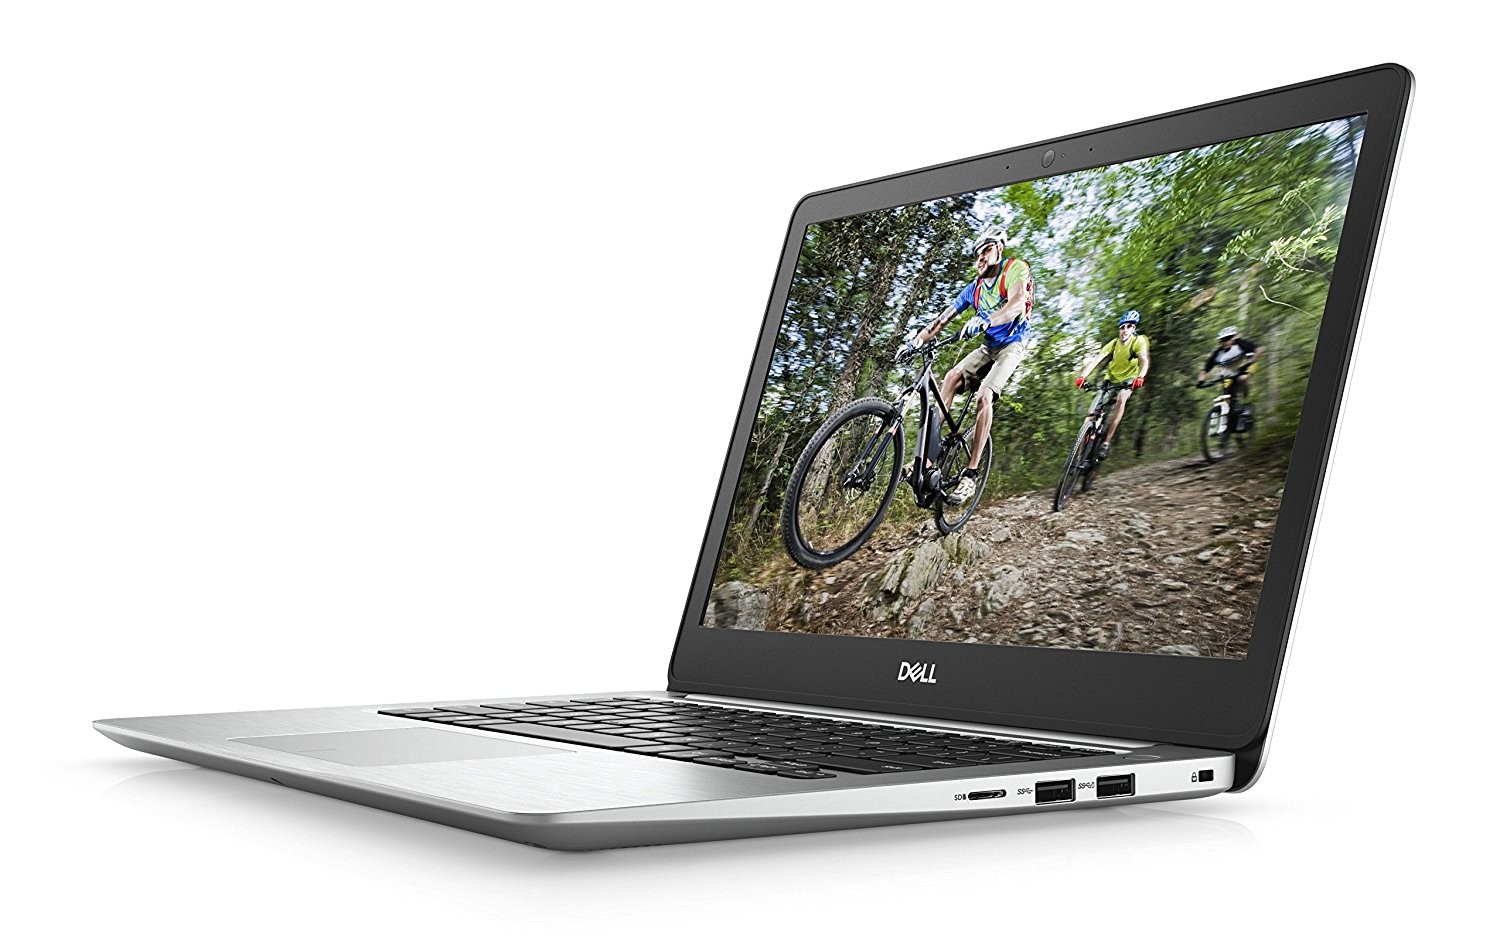 Dell Inspiron 13 5000 13.3-inch FHD Laptop, i5-8250U, 8GB RAM, 256GB SSD, W10